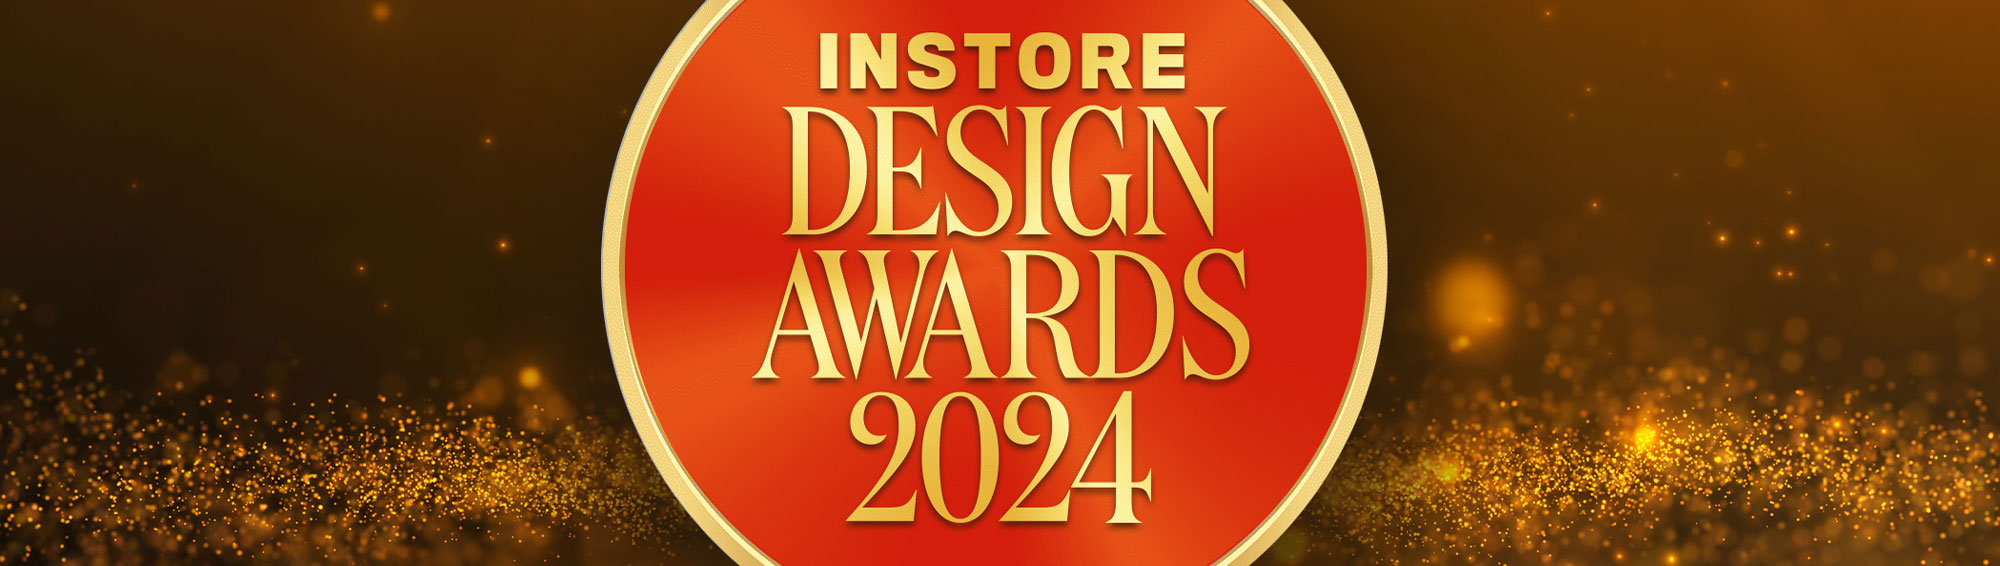 INSTORE Design Awards 2024 – Silver Over $1,000